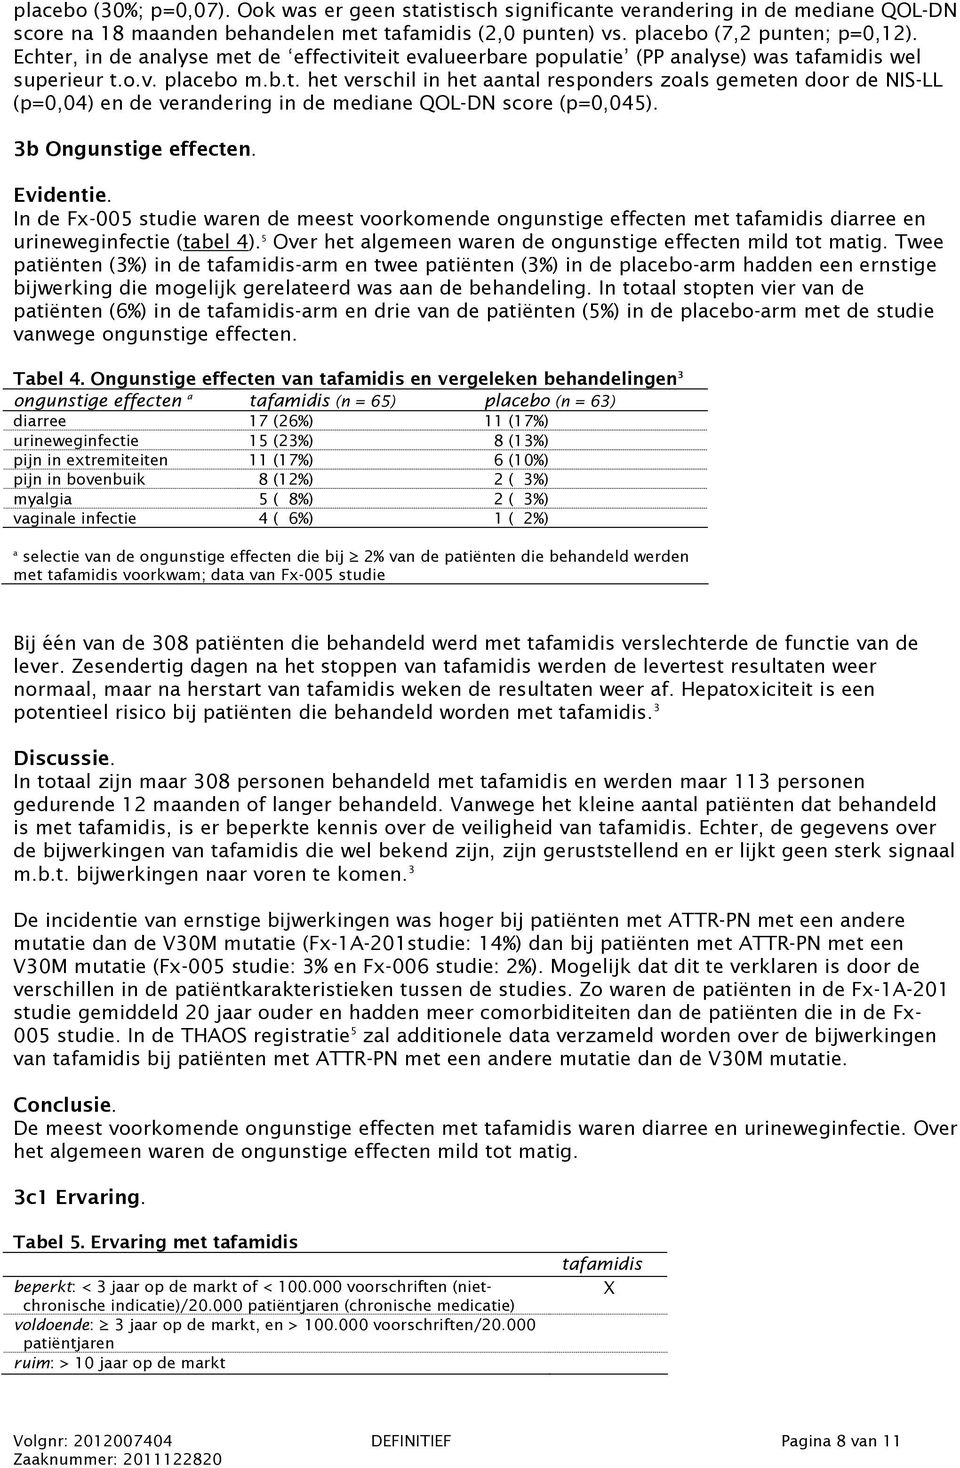 3b Ongunstige effecten. Evidentie. In de Fx-005 studie waren de meest voorkomende ongunstige effecten met tafamidis diarree en urineweginfectie (tabel 4).